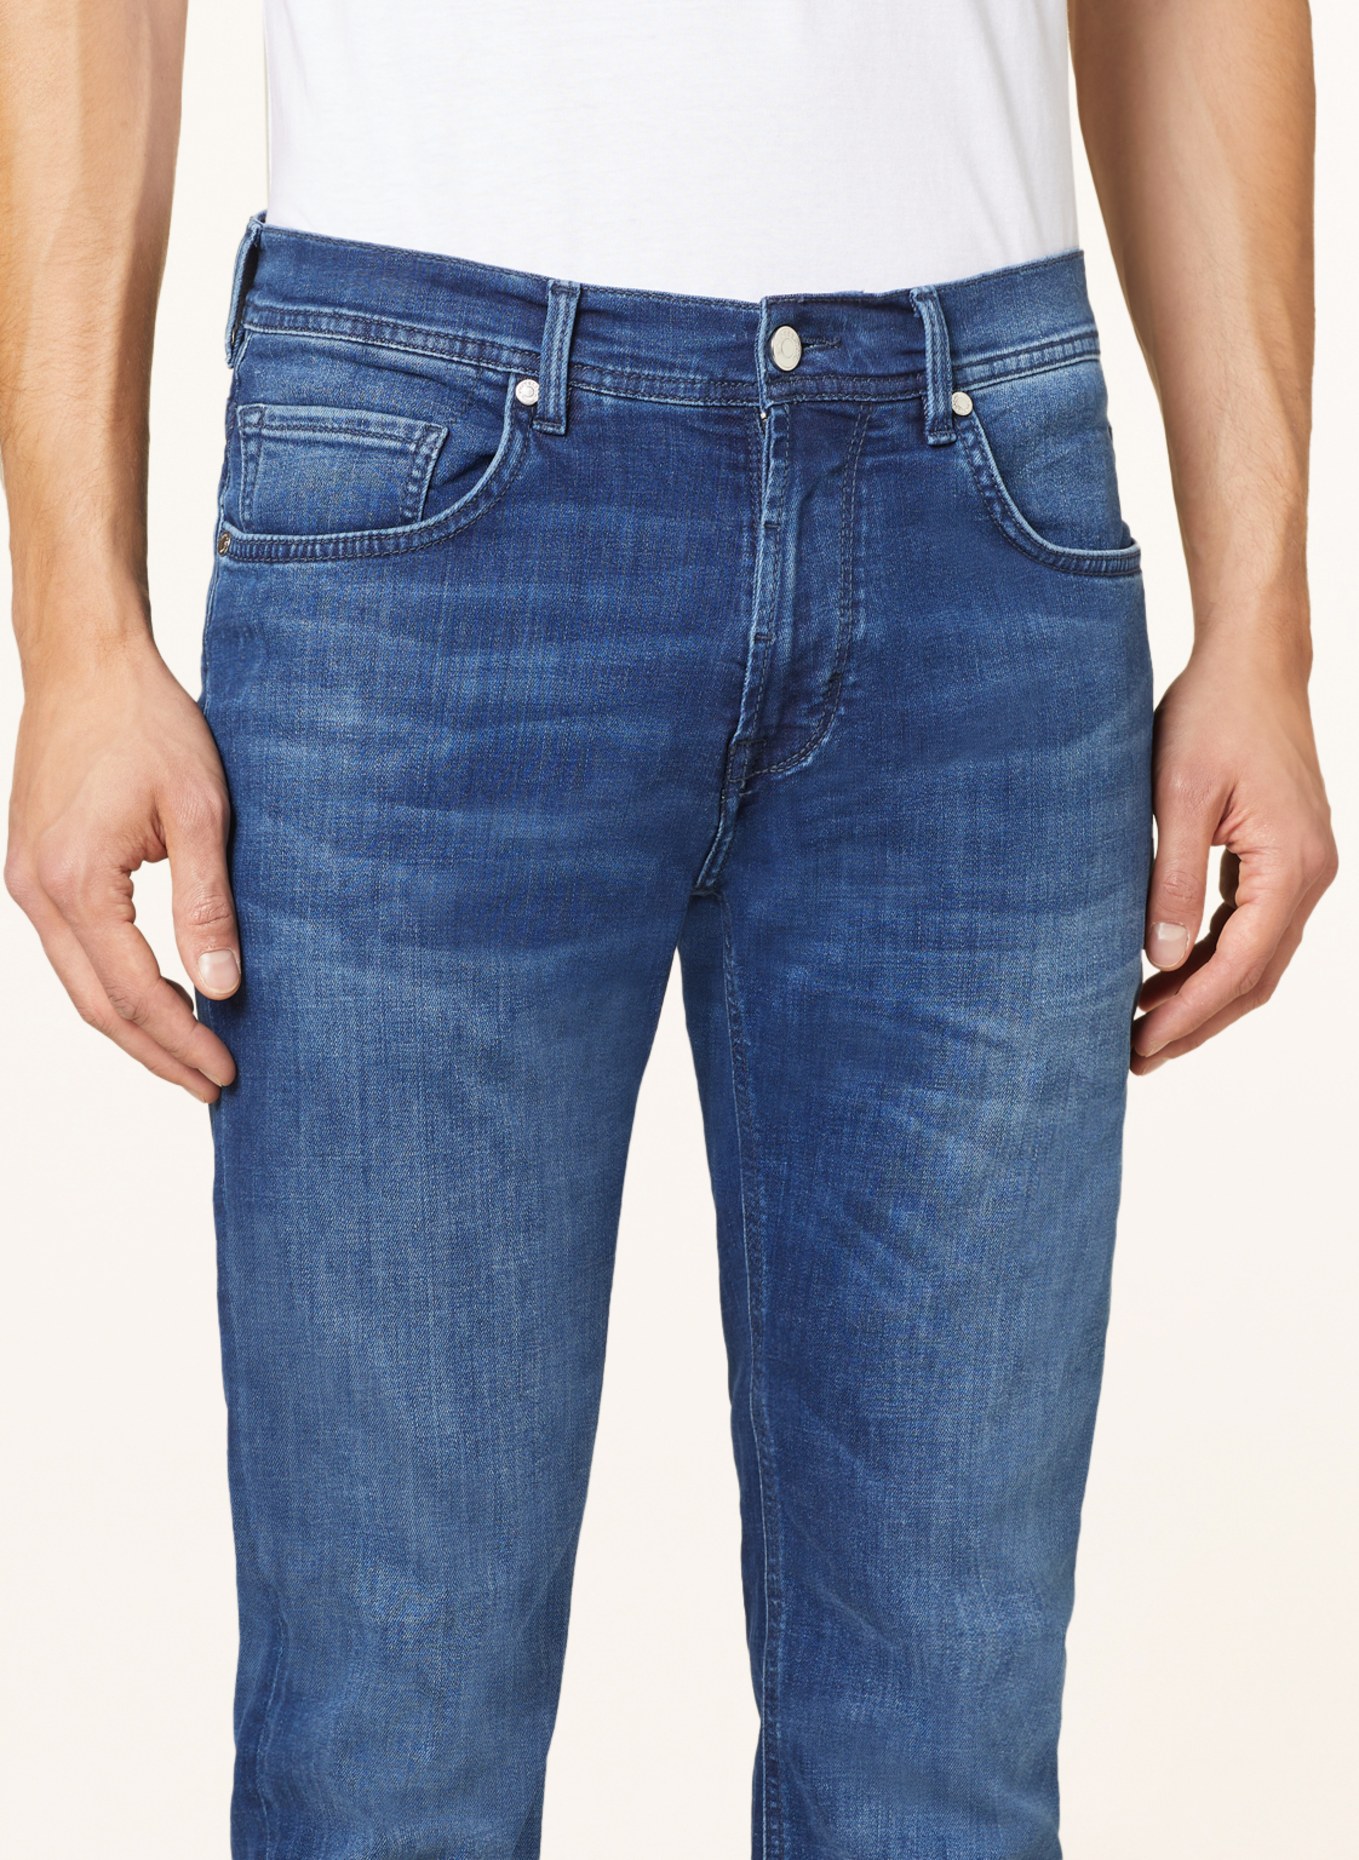 BALDESSARINI Jeans Regular Fit, Farbe: 6825 blue used whisker (Bild 6)